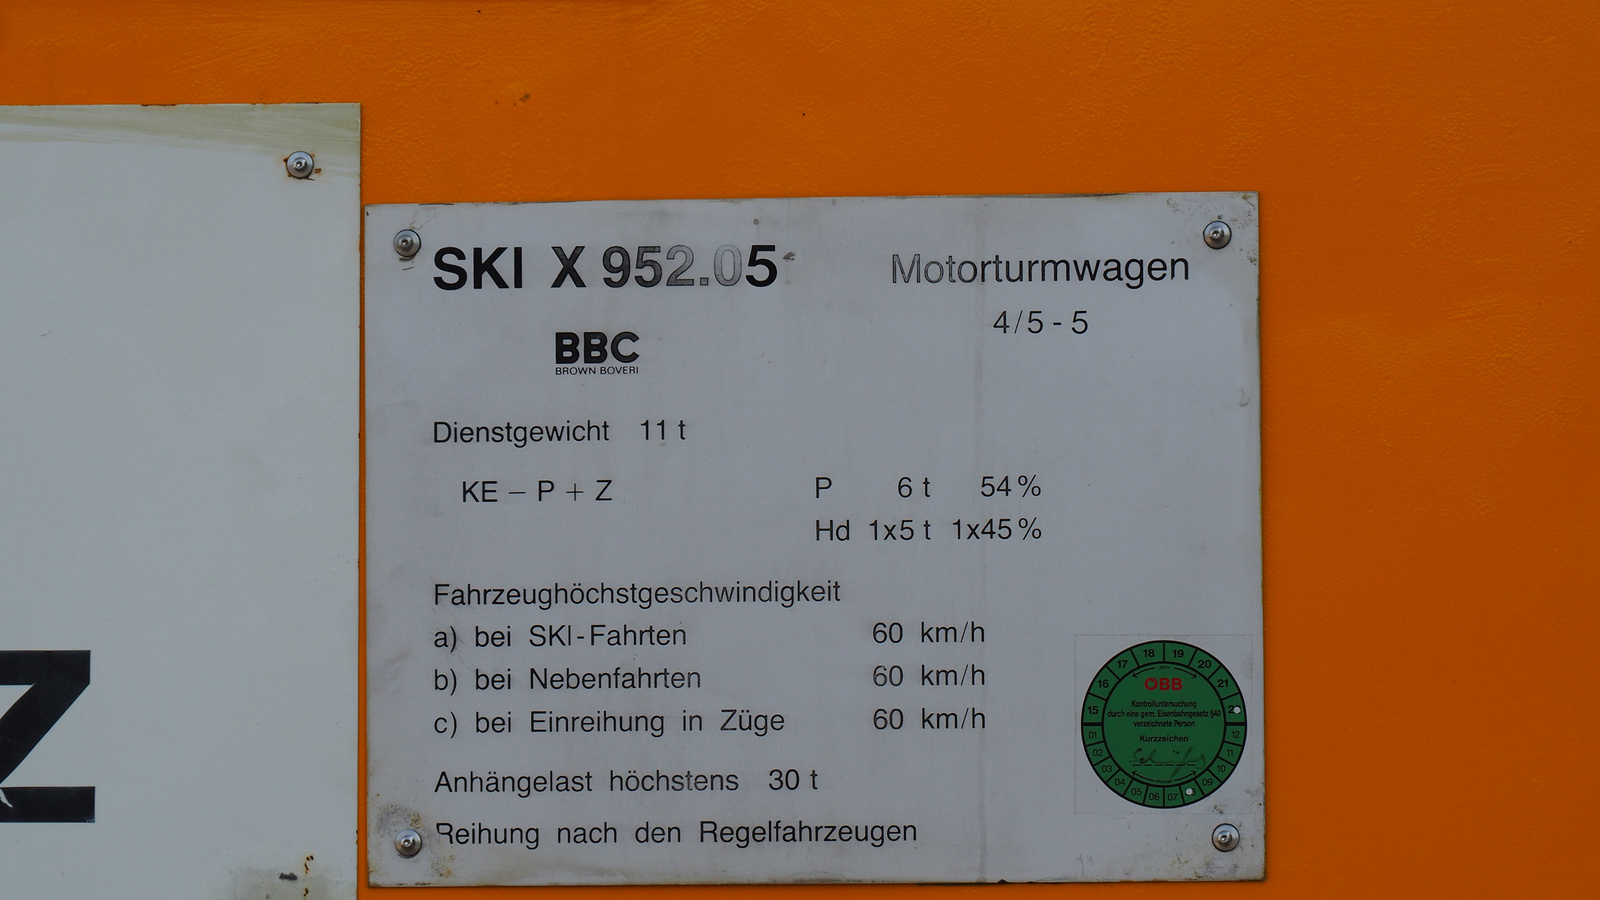 x952.05, SzG3